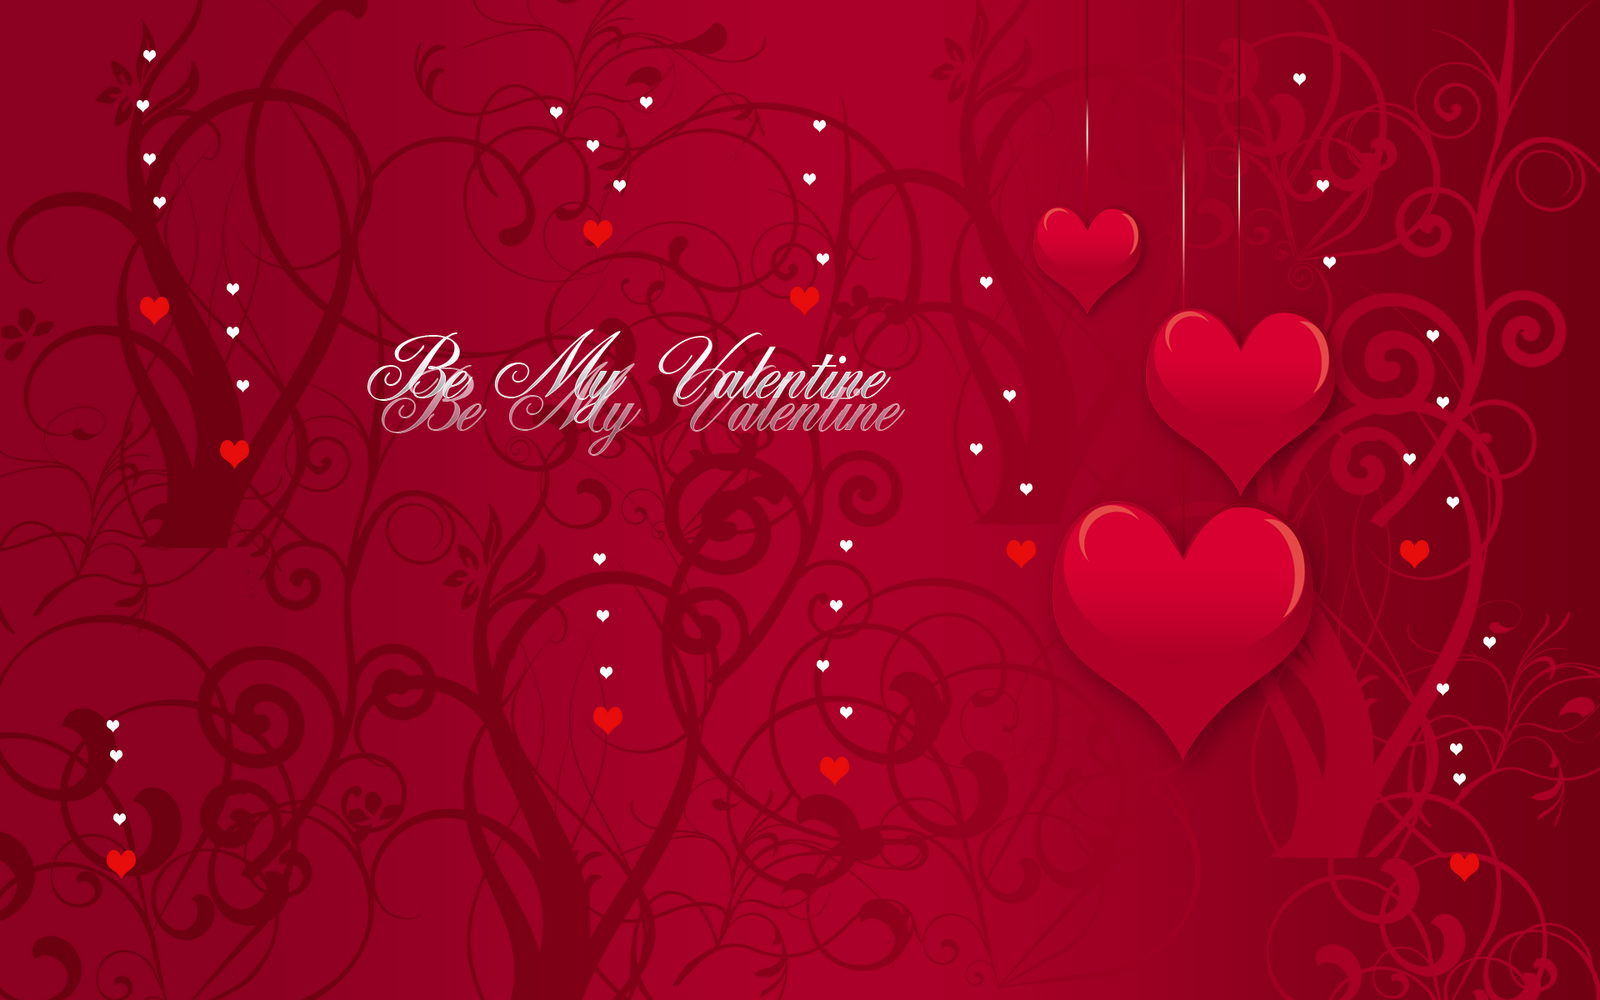 san valentino wallpaper hd,rosso,cuore,san valentino,amore,testo